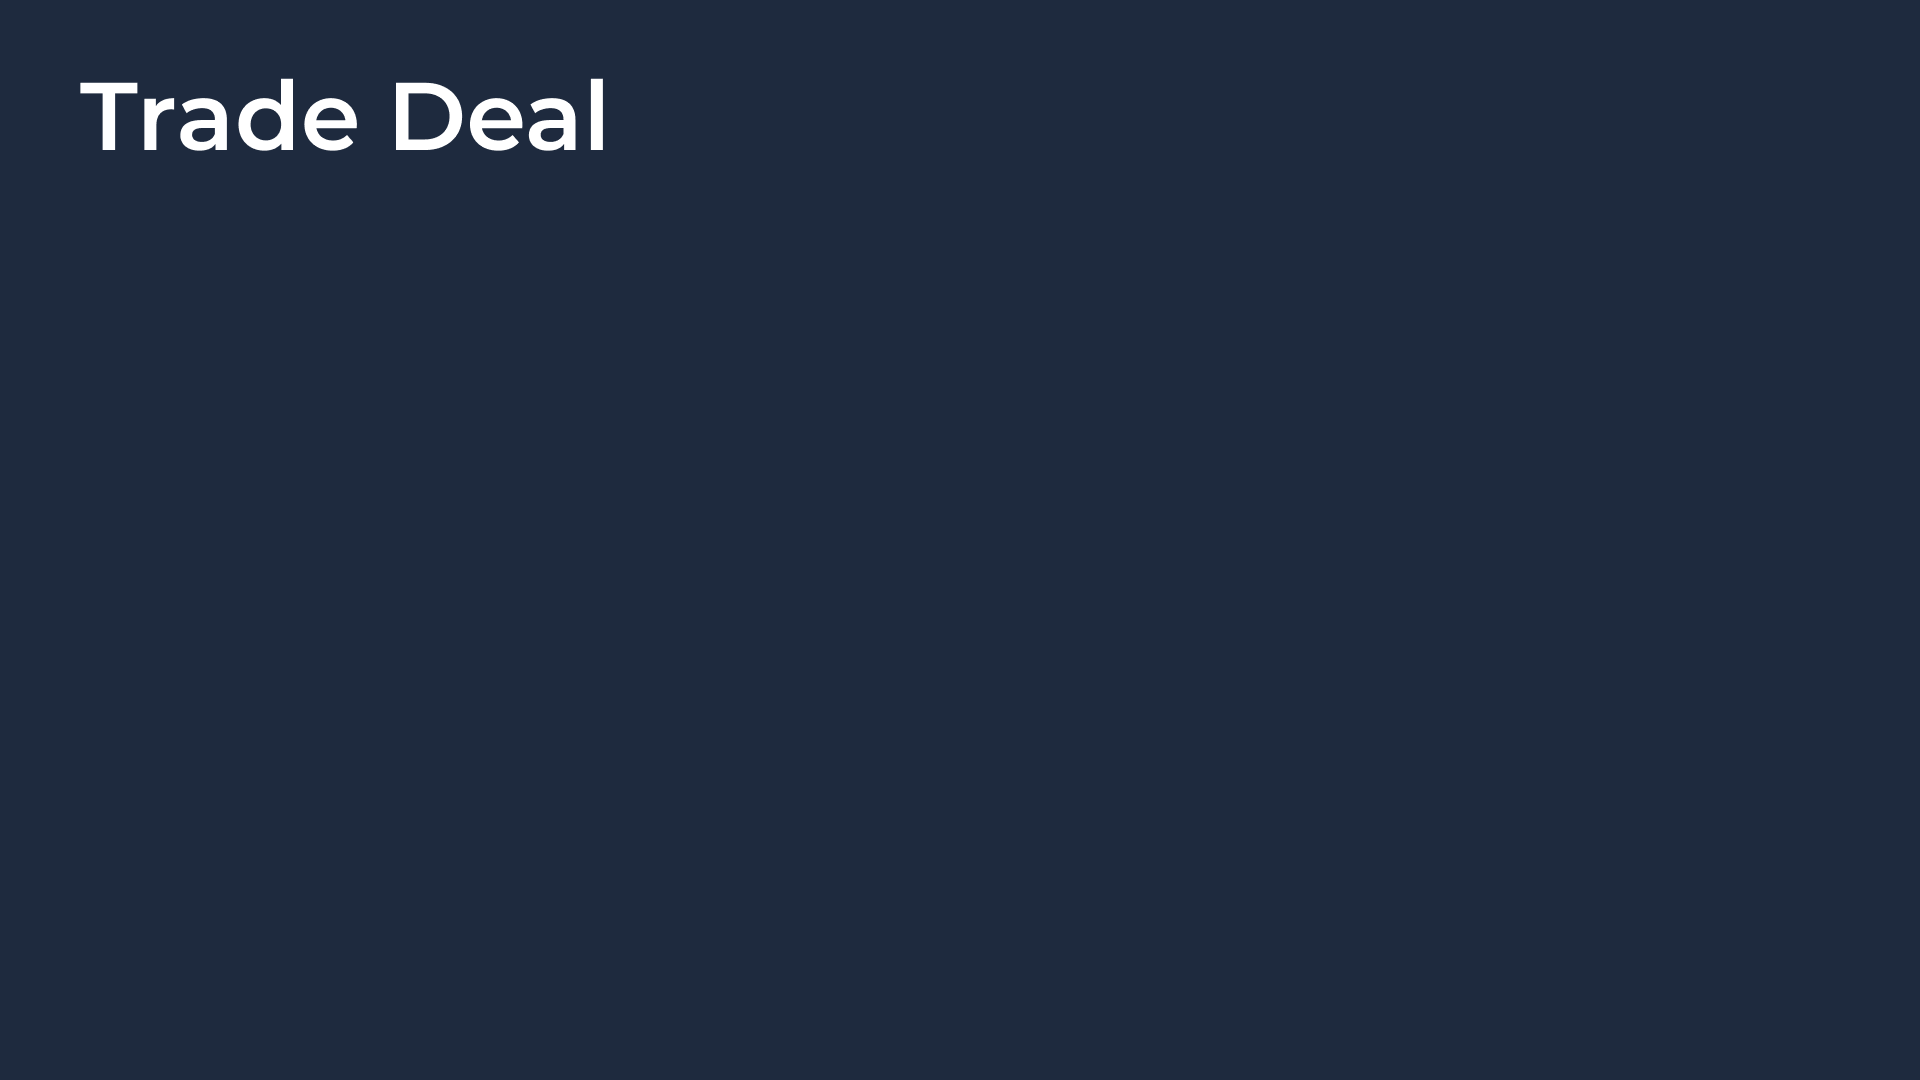 Trade Deal